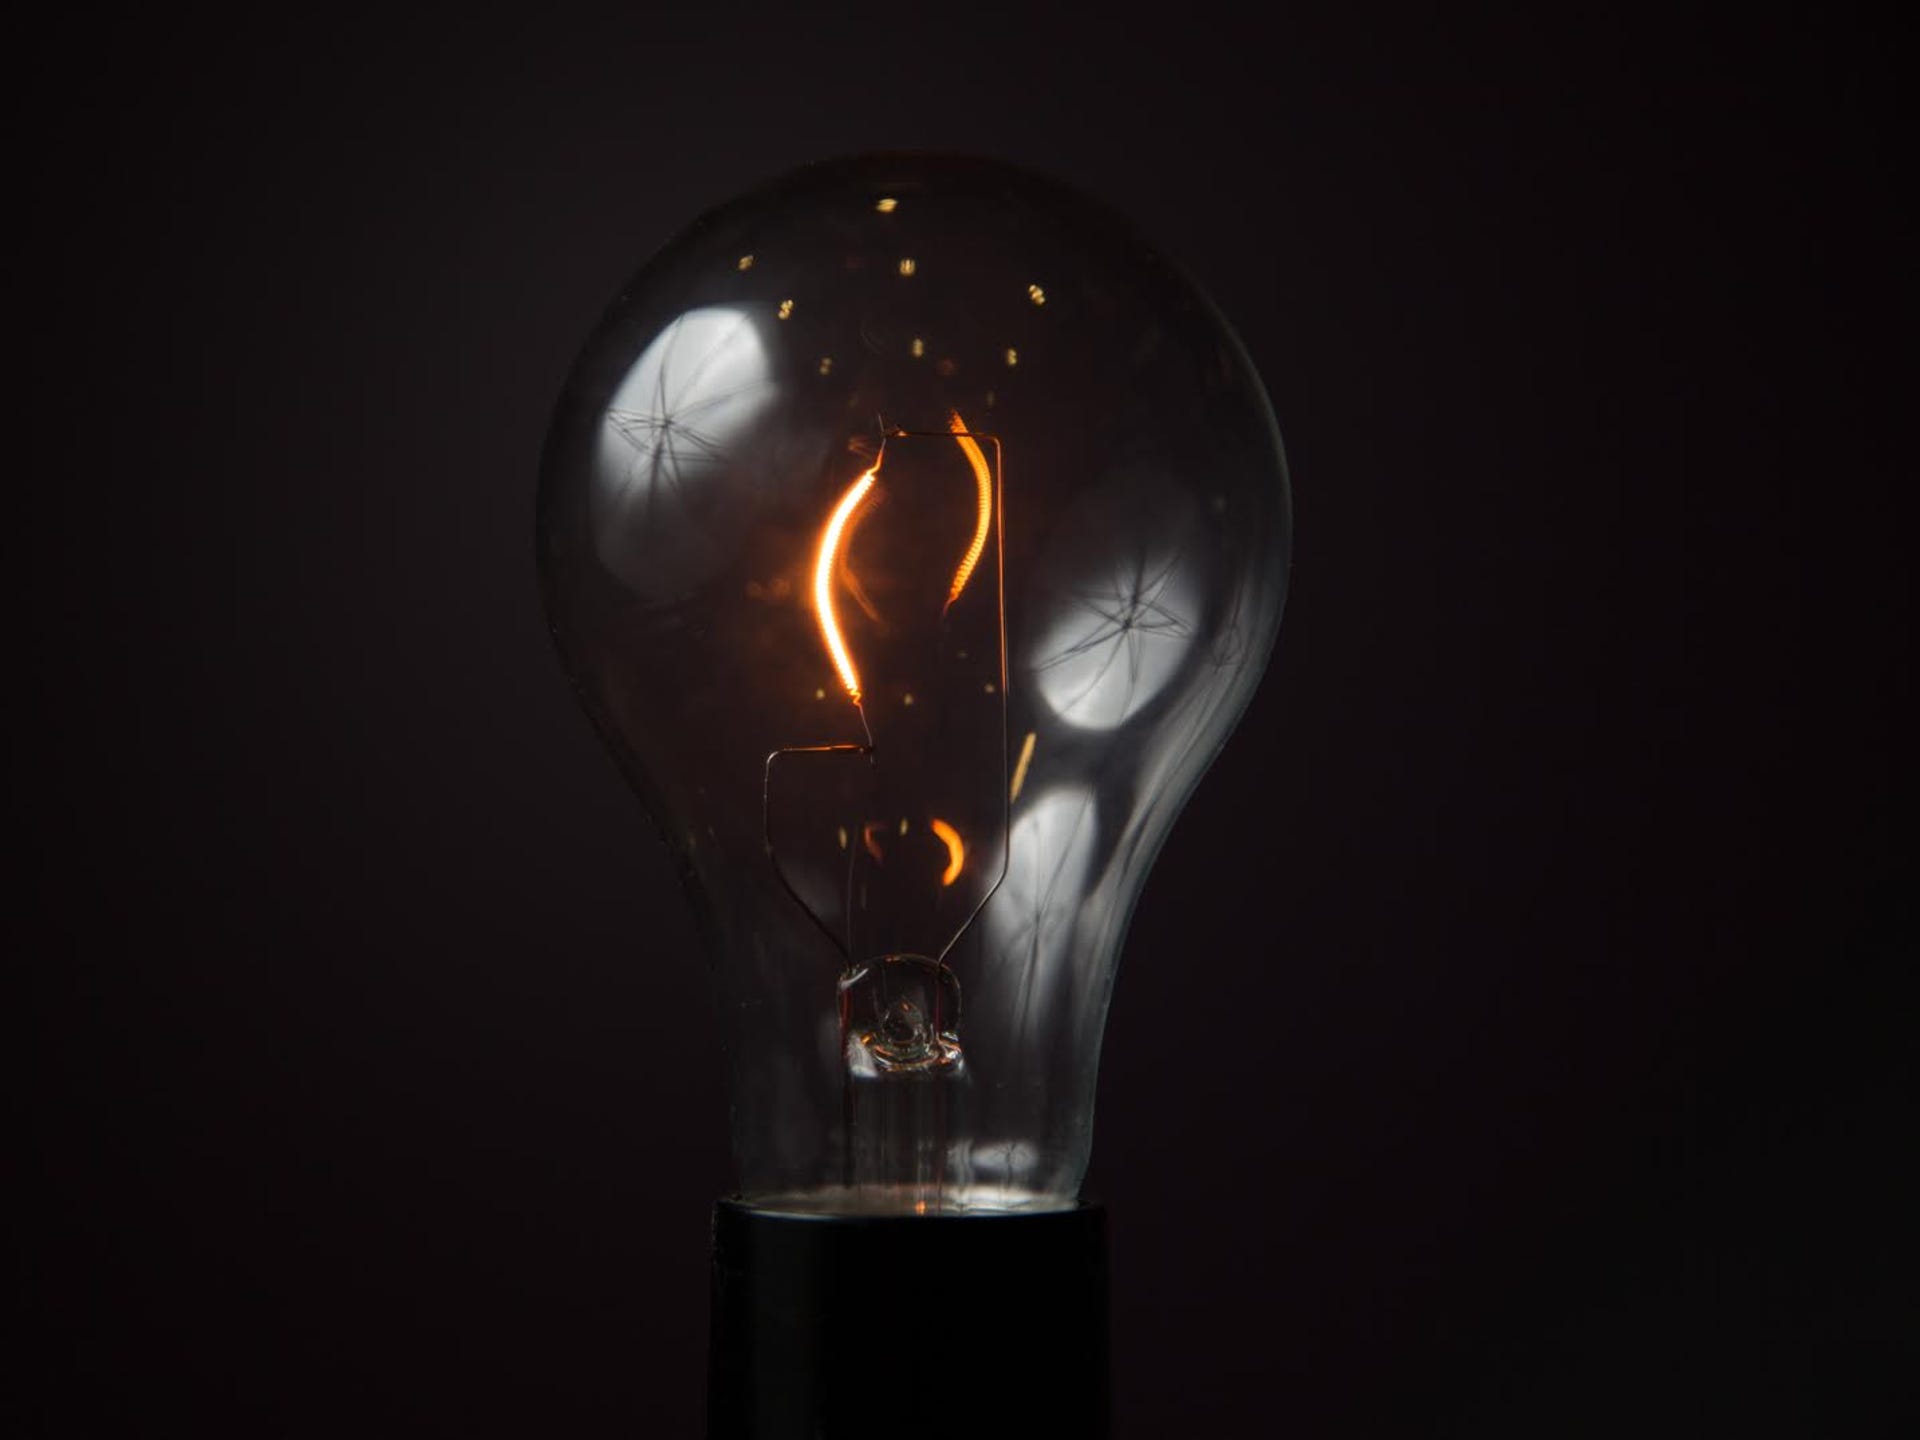 incandescent-light-bulb.jpg